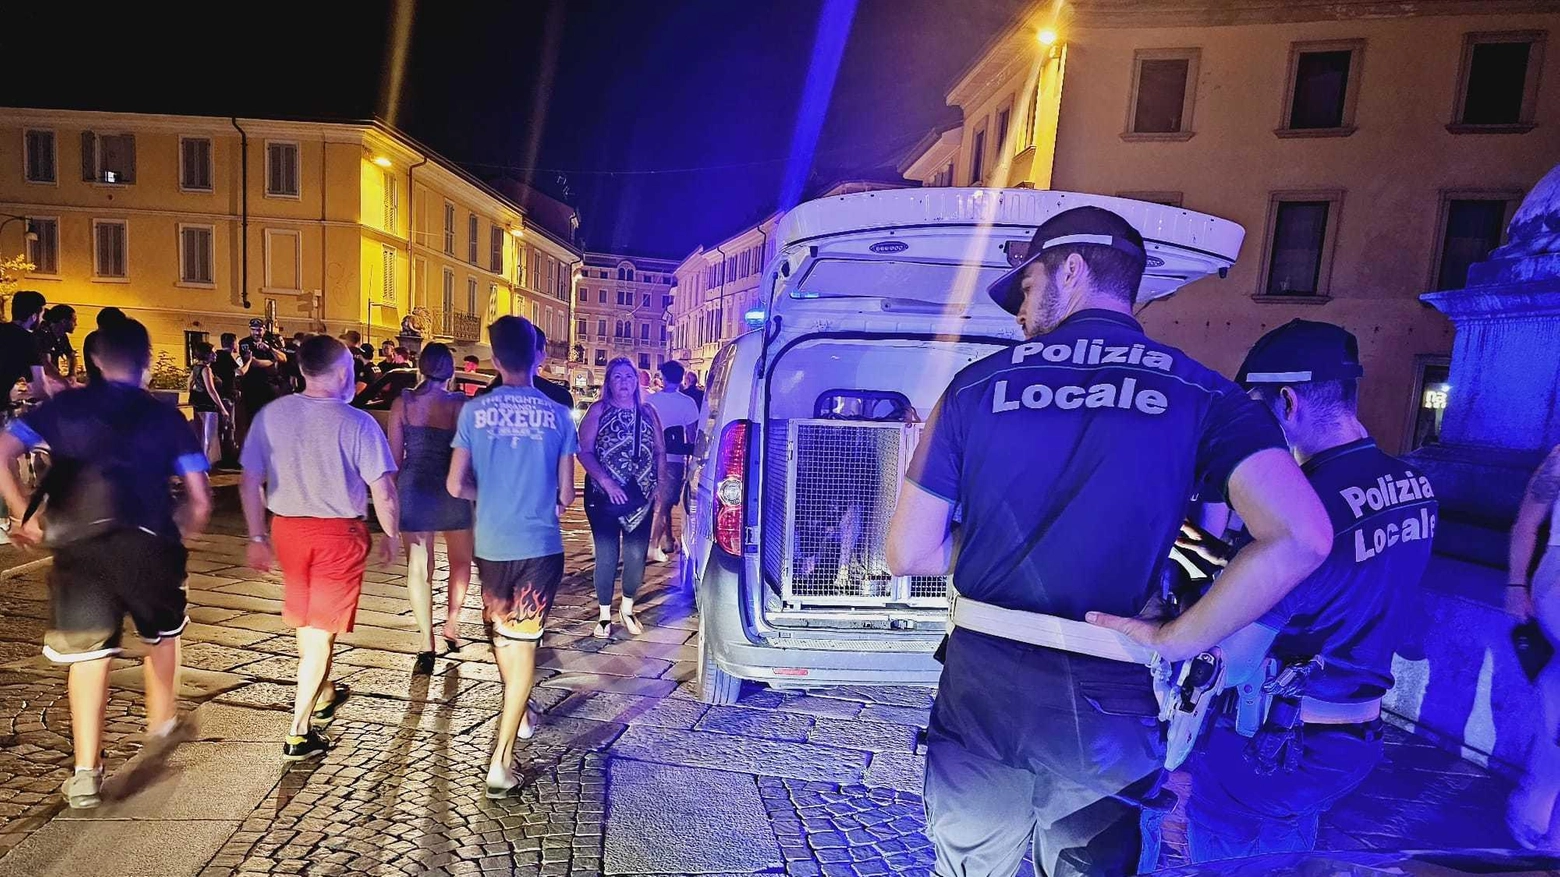 La polizia locale di Monza intensifica i controlli durante i weekend per contrastare il degrado urbano, identificando persone e sequestrando sostanze stupefacenti in varie zone della città.